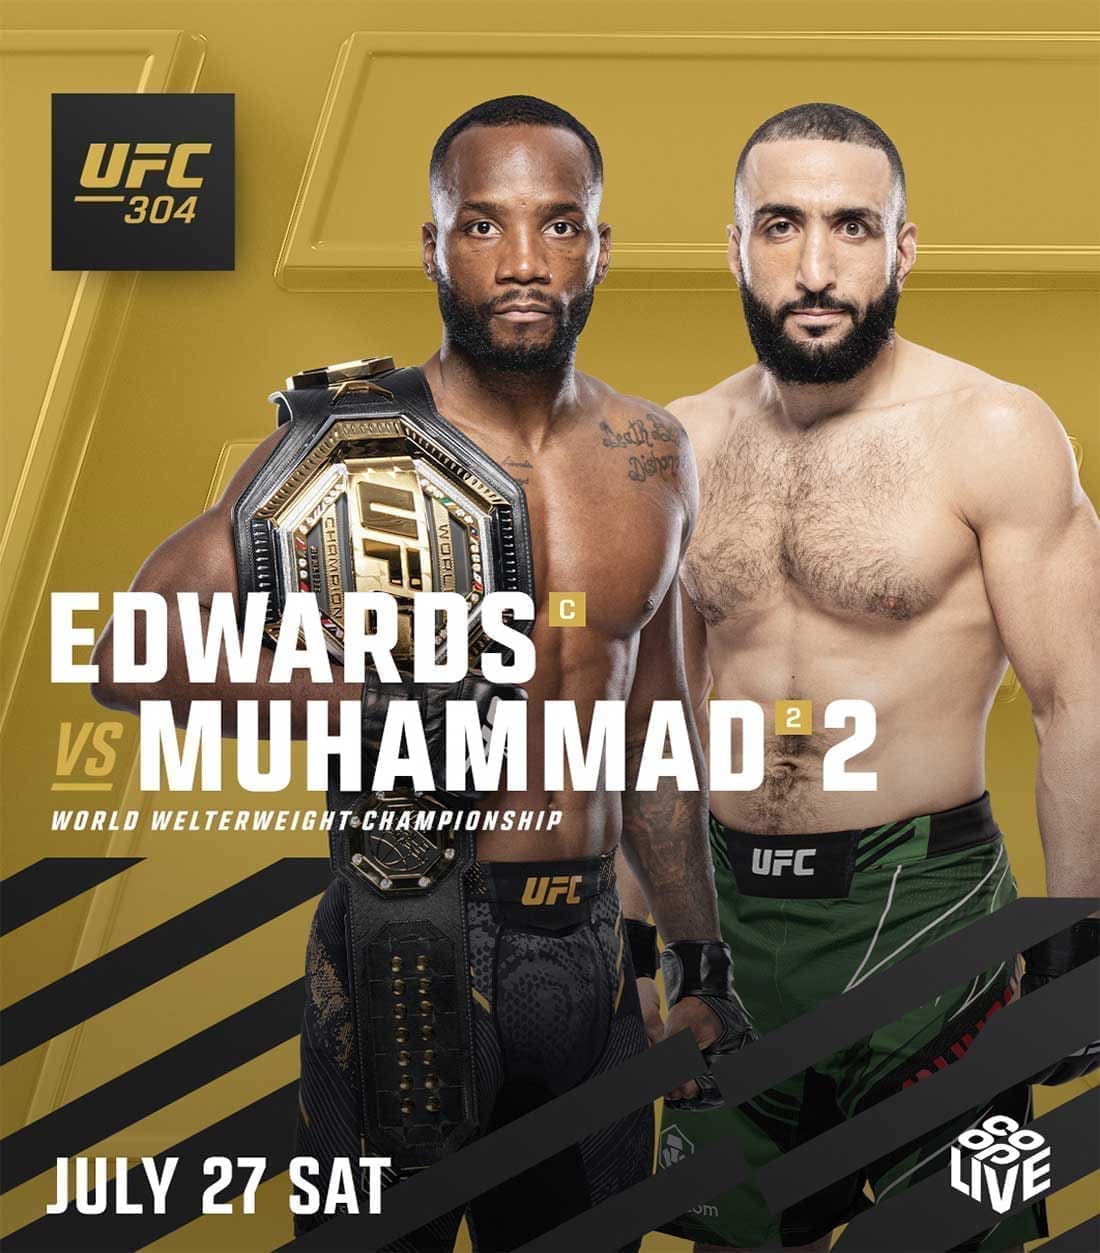 UFC 304: Эдвардс - Мухаммад 2 дата проведения, кард, участники и результаты